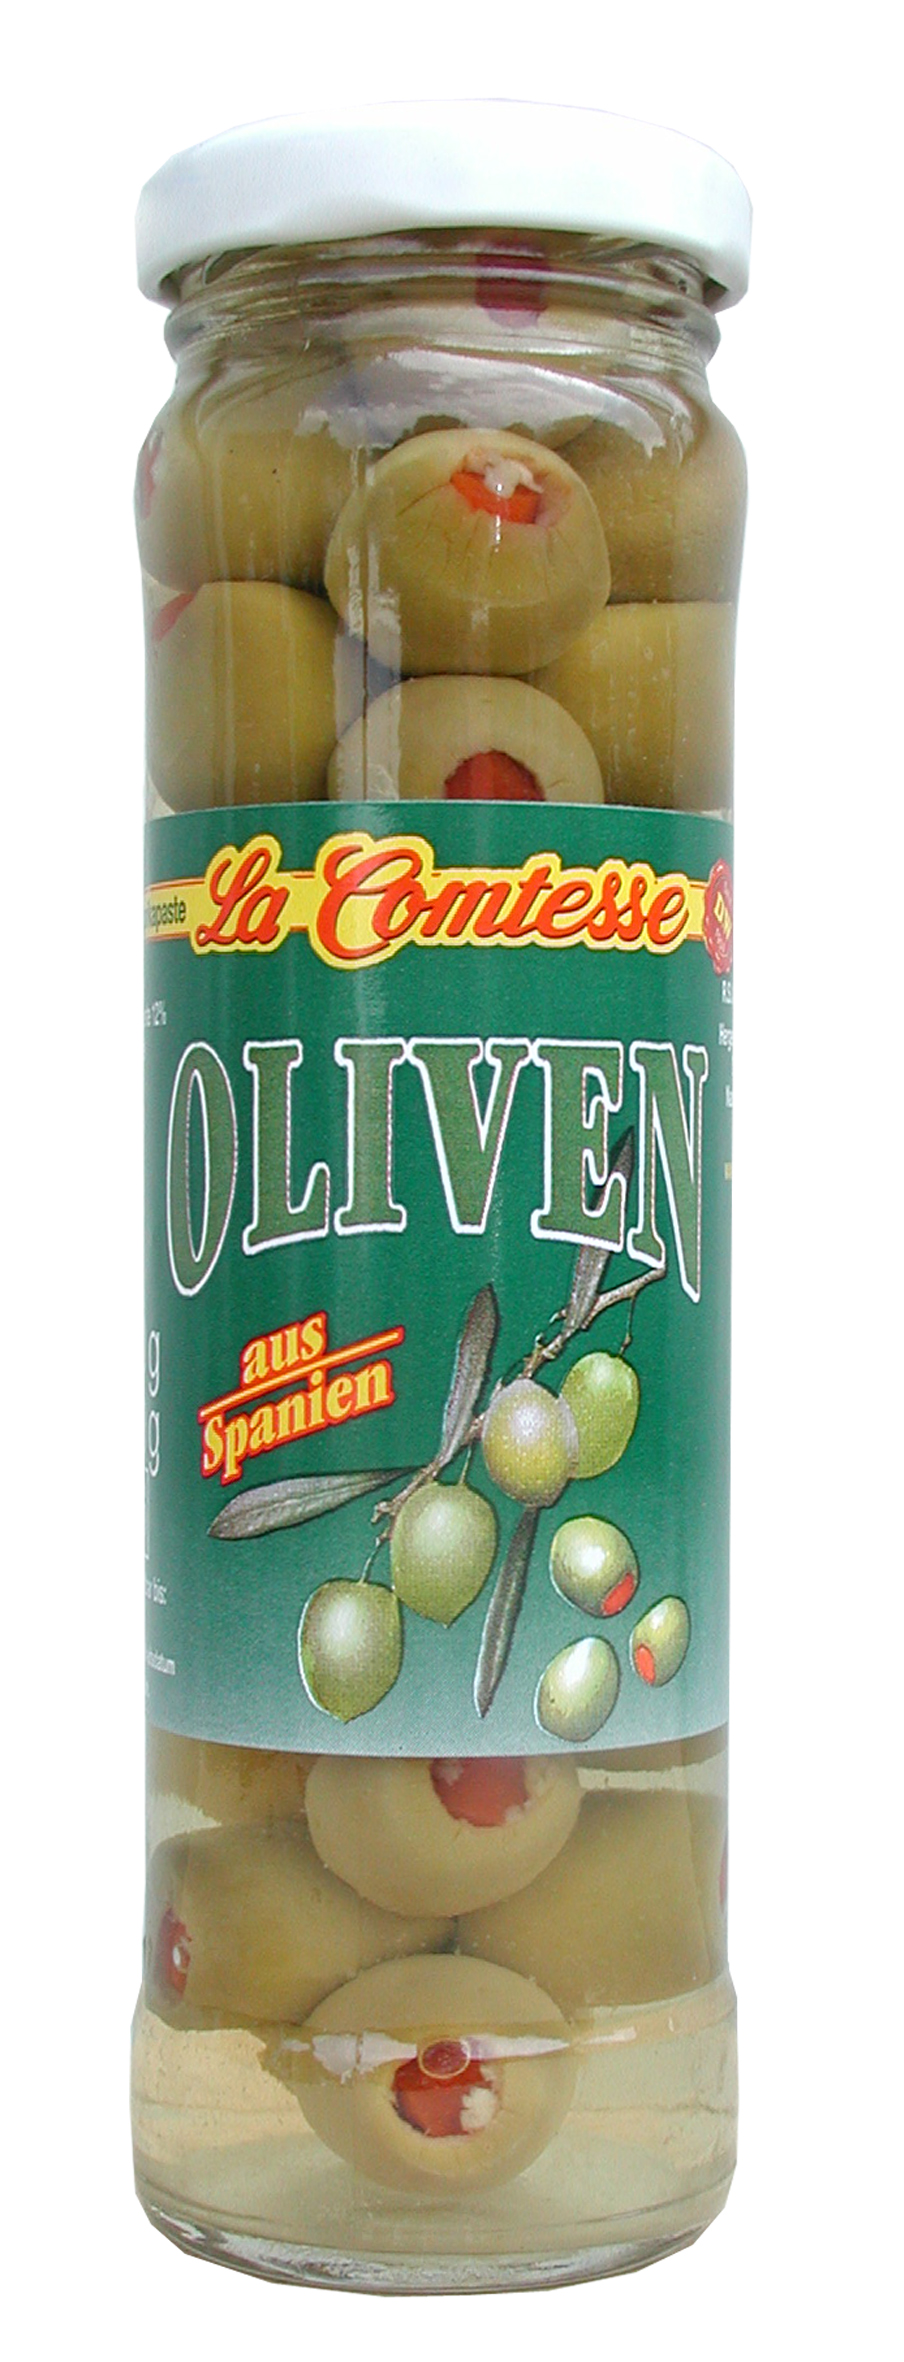 Grüne Oliven mit Paprika, handpack, 140 g